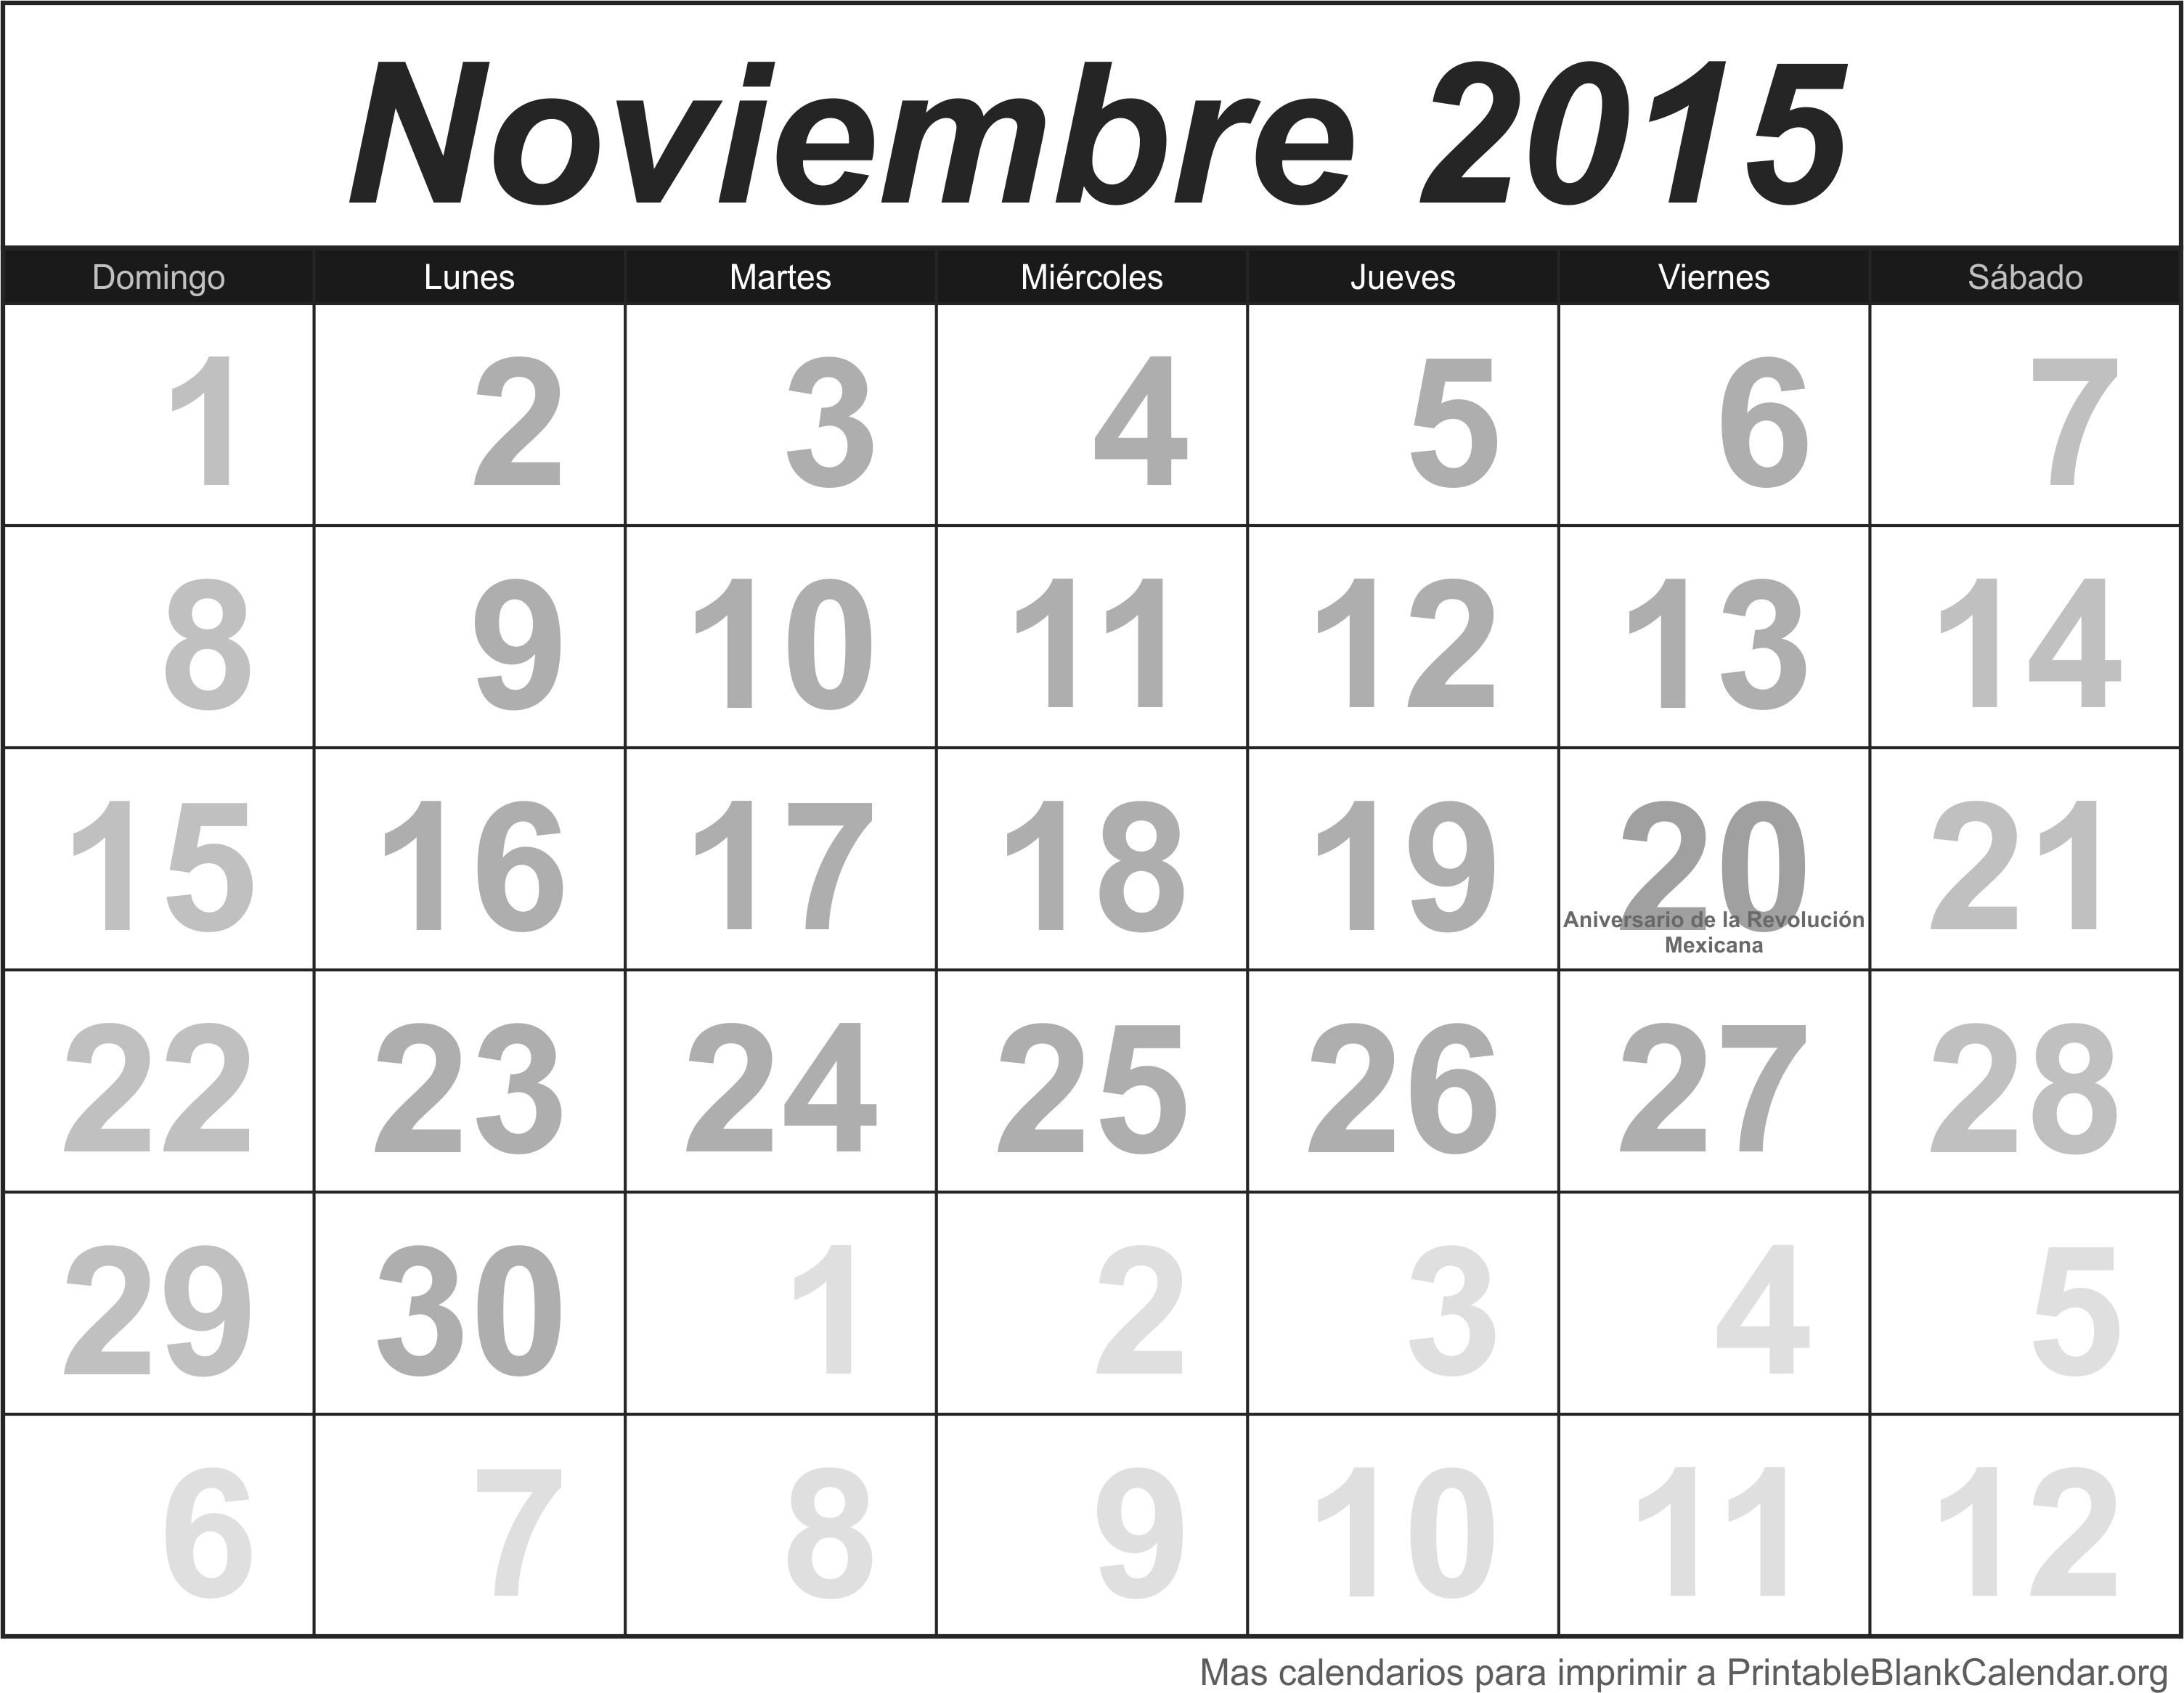 Nov 2015 calendario